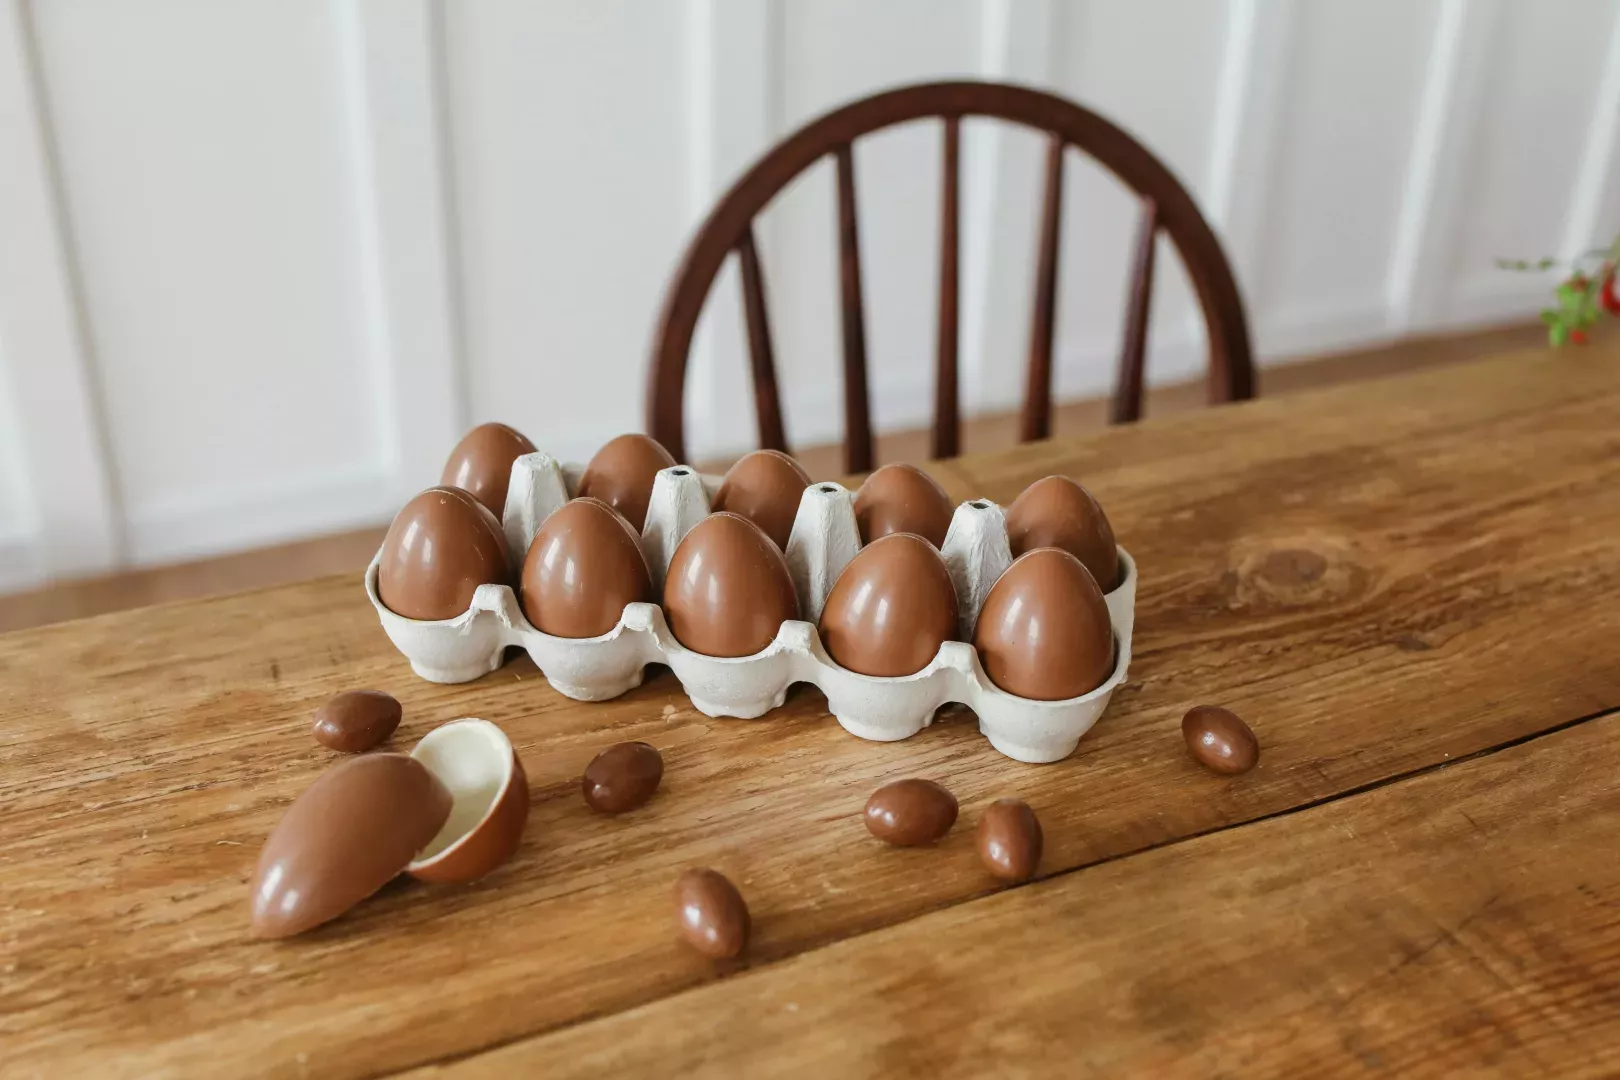 Chasse aux œufs en appartement : nos idées de cachettes super ingénieuses pour vos chocolats de Pâques !